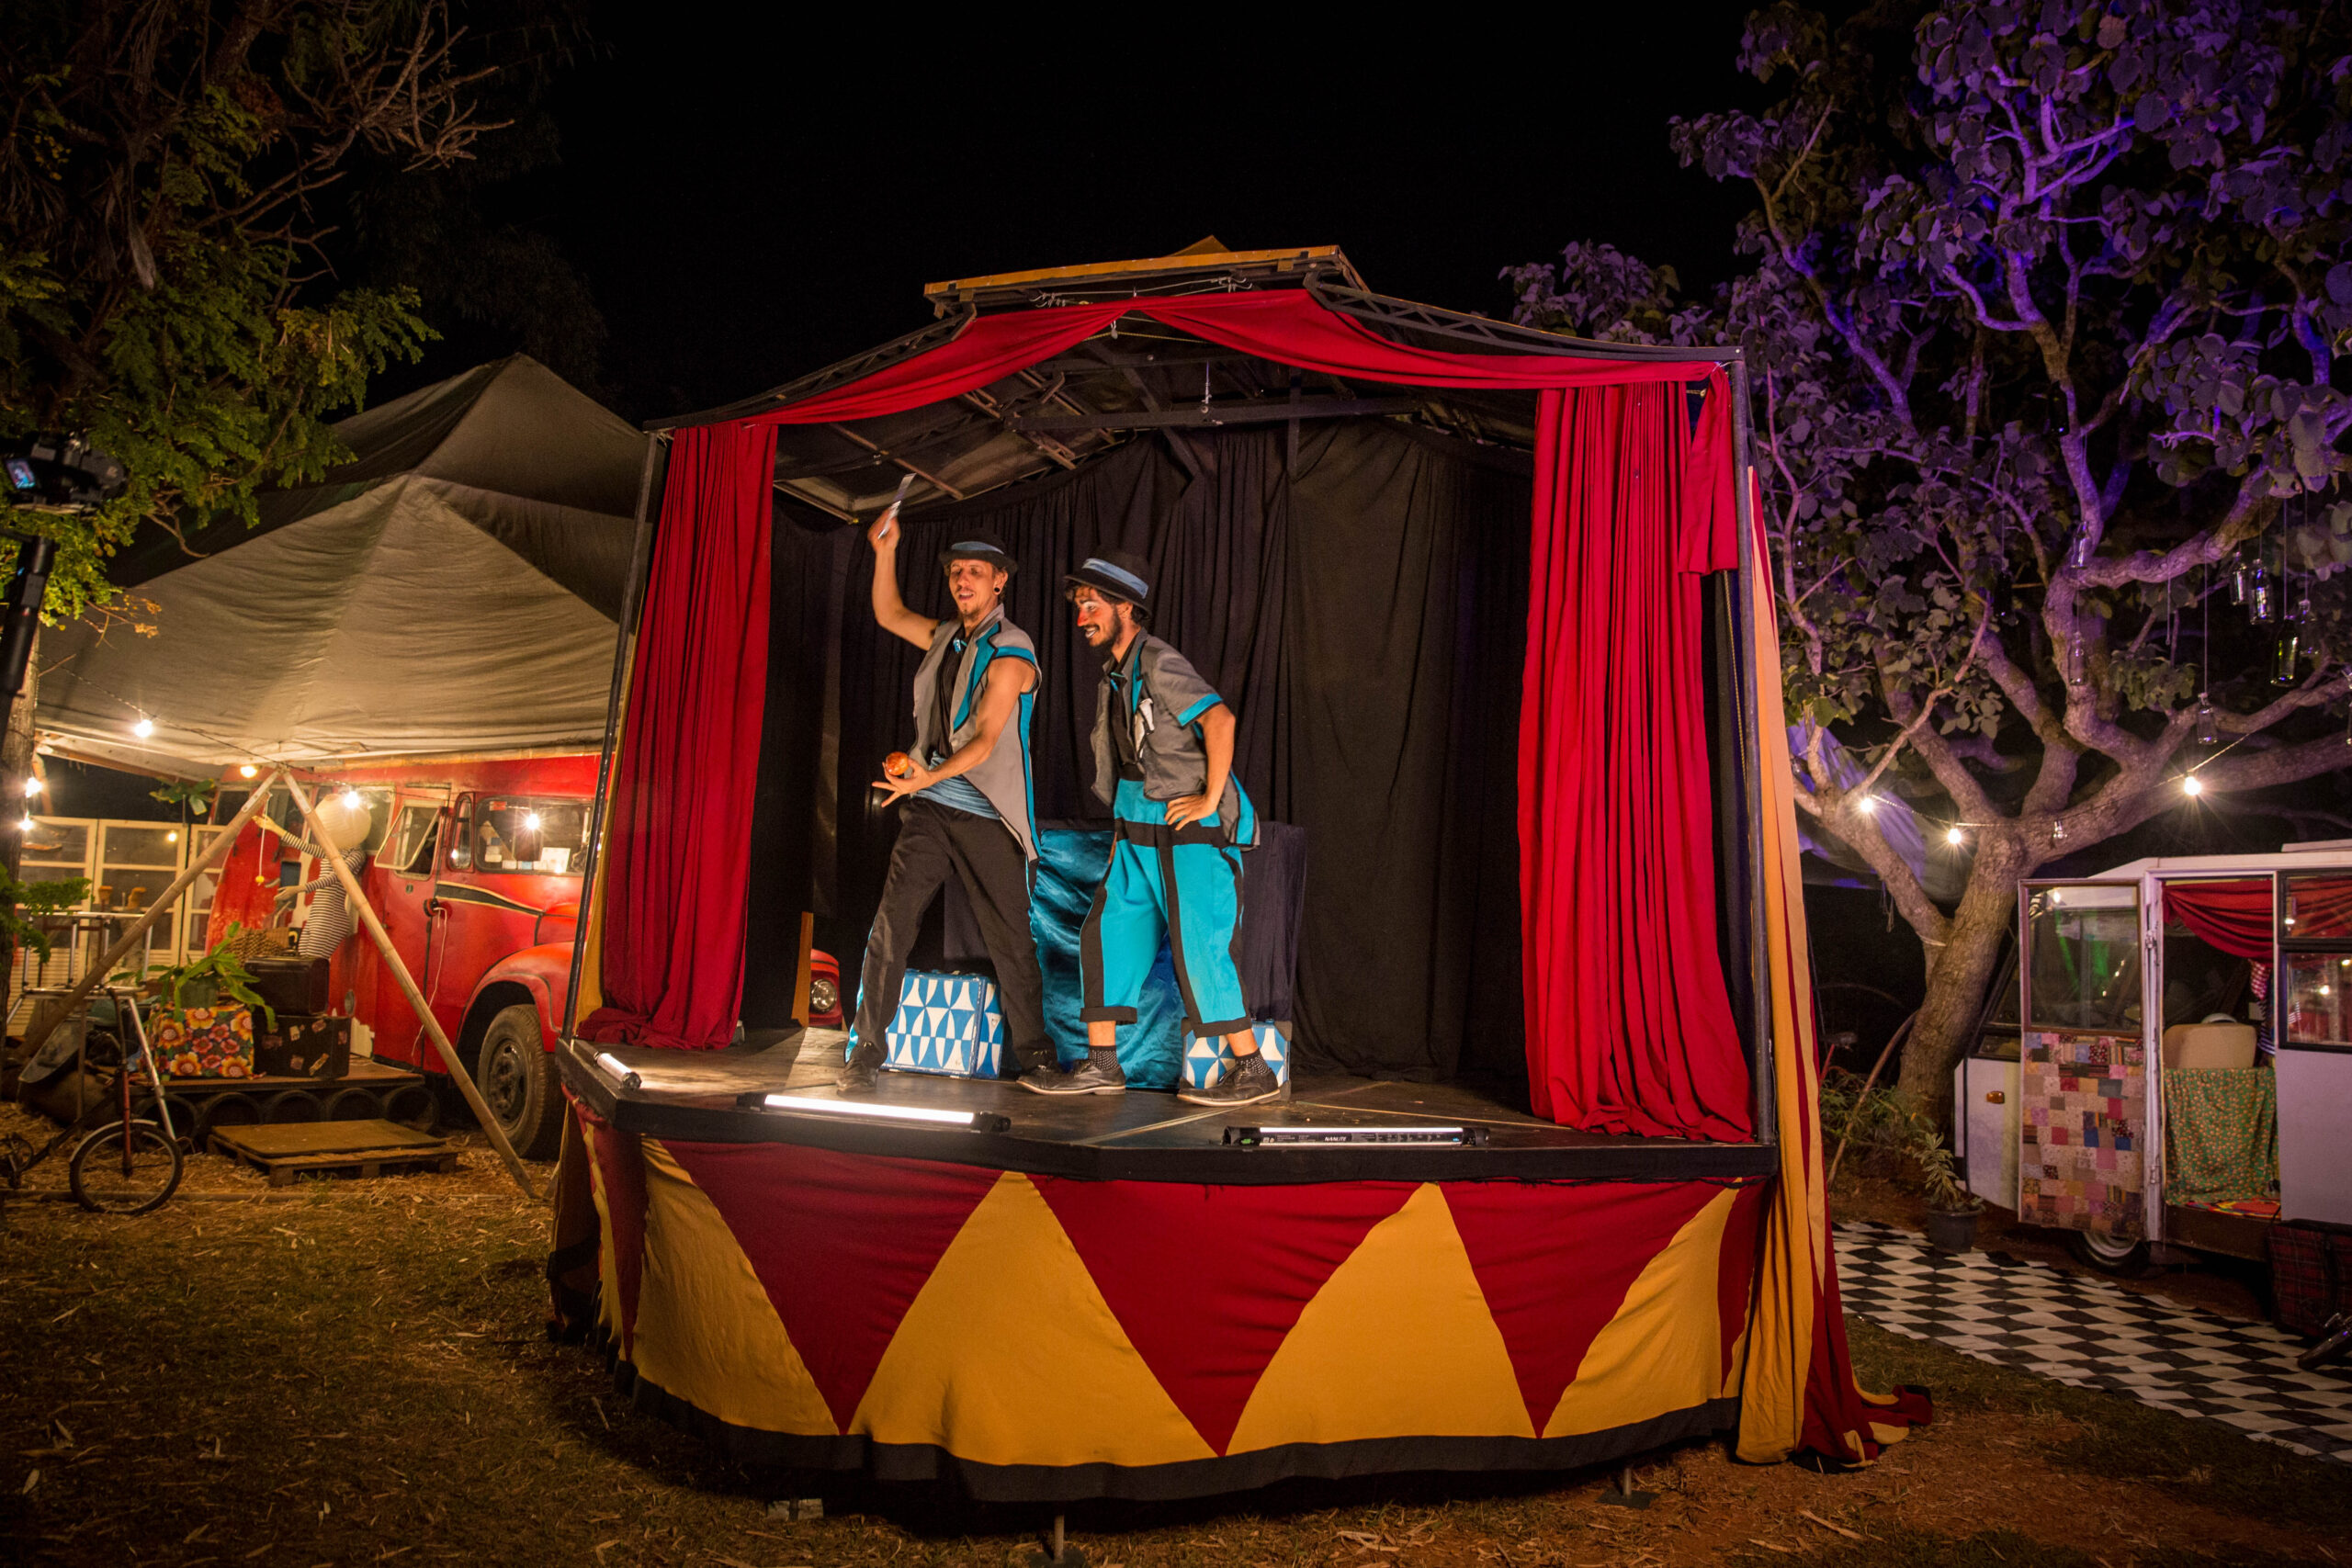 Espetáculos musicais, com gags e números circenses, farão a alegria do público infantil e adulto | Foto: Caco Marques/Divulgação